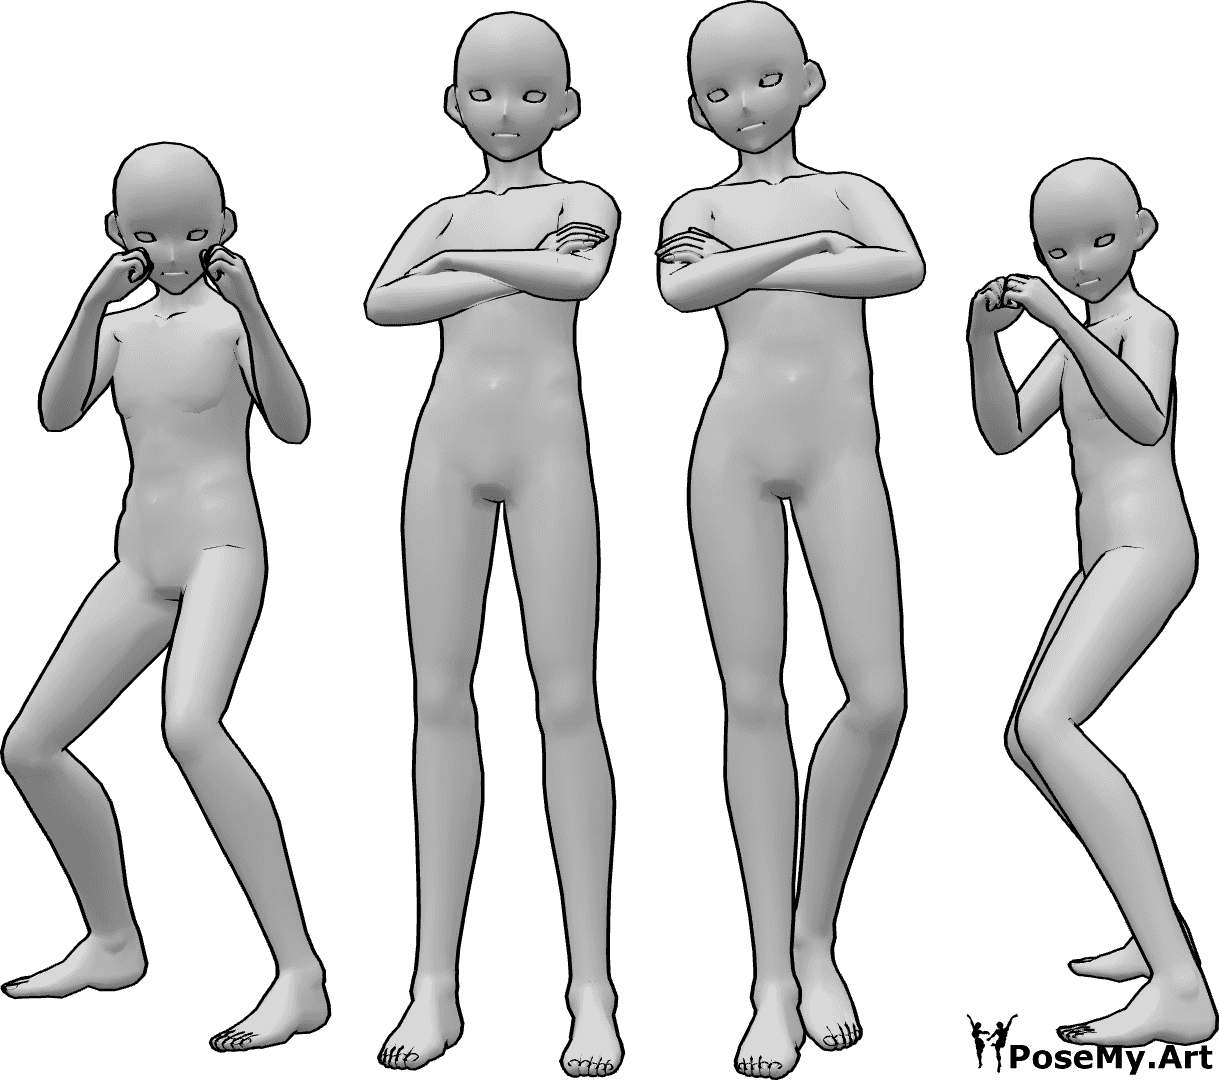 Riferimento alle pose- Posa dei lottatori maschi Anime - Quattro pugili maschi in posa, due di loro in posizione di boxe e gli altri due in piedi con le braccia incrociate.